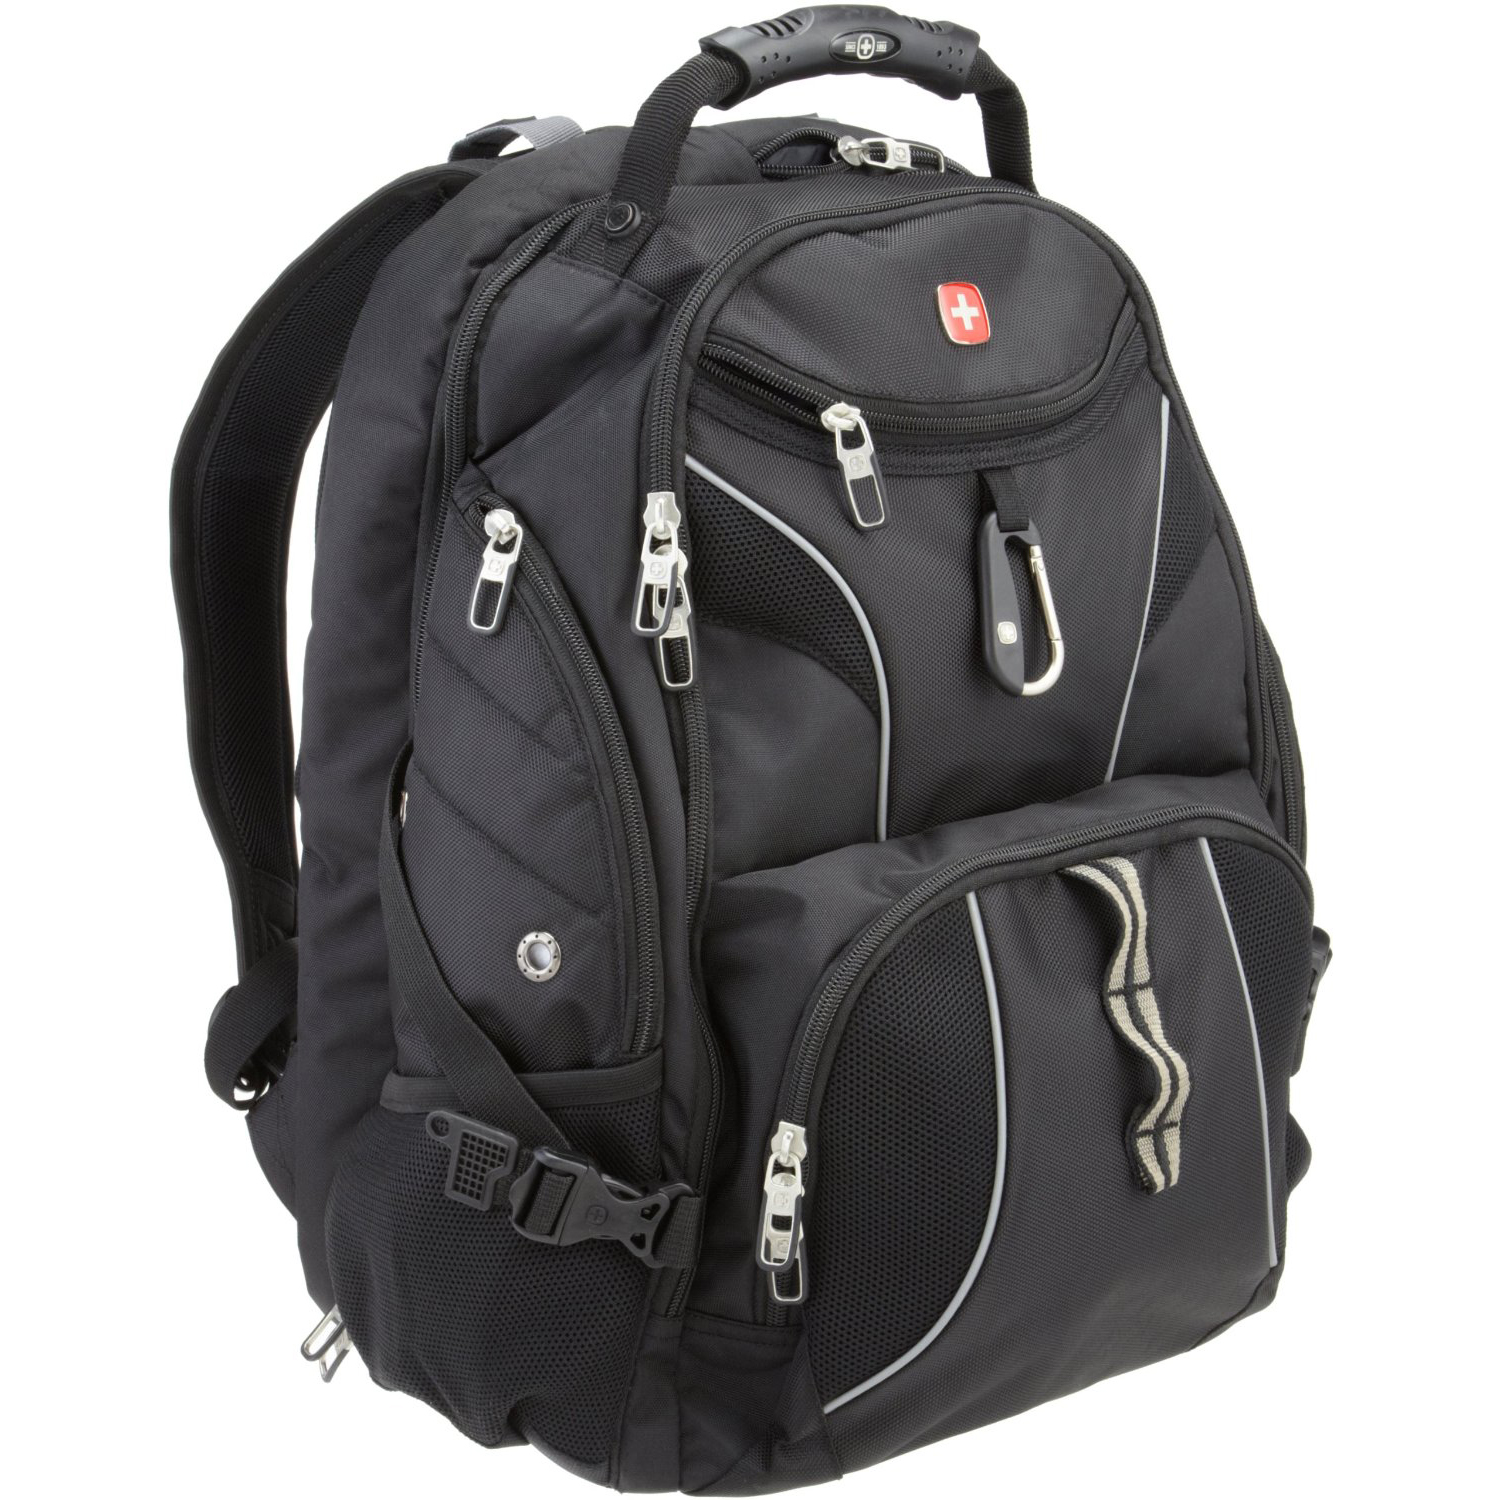 SwissGear SA1923 ScanSmart Backpack VS SwissGear SA1908 ScanSmart Backpack